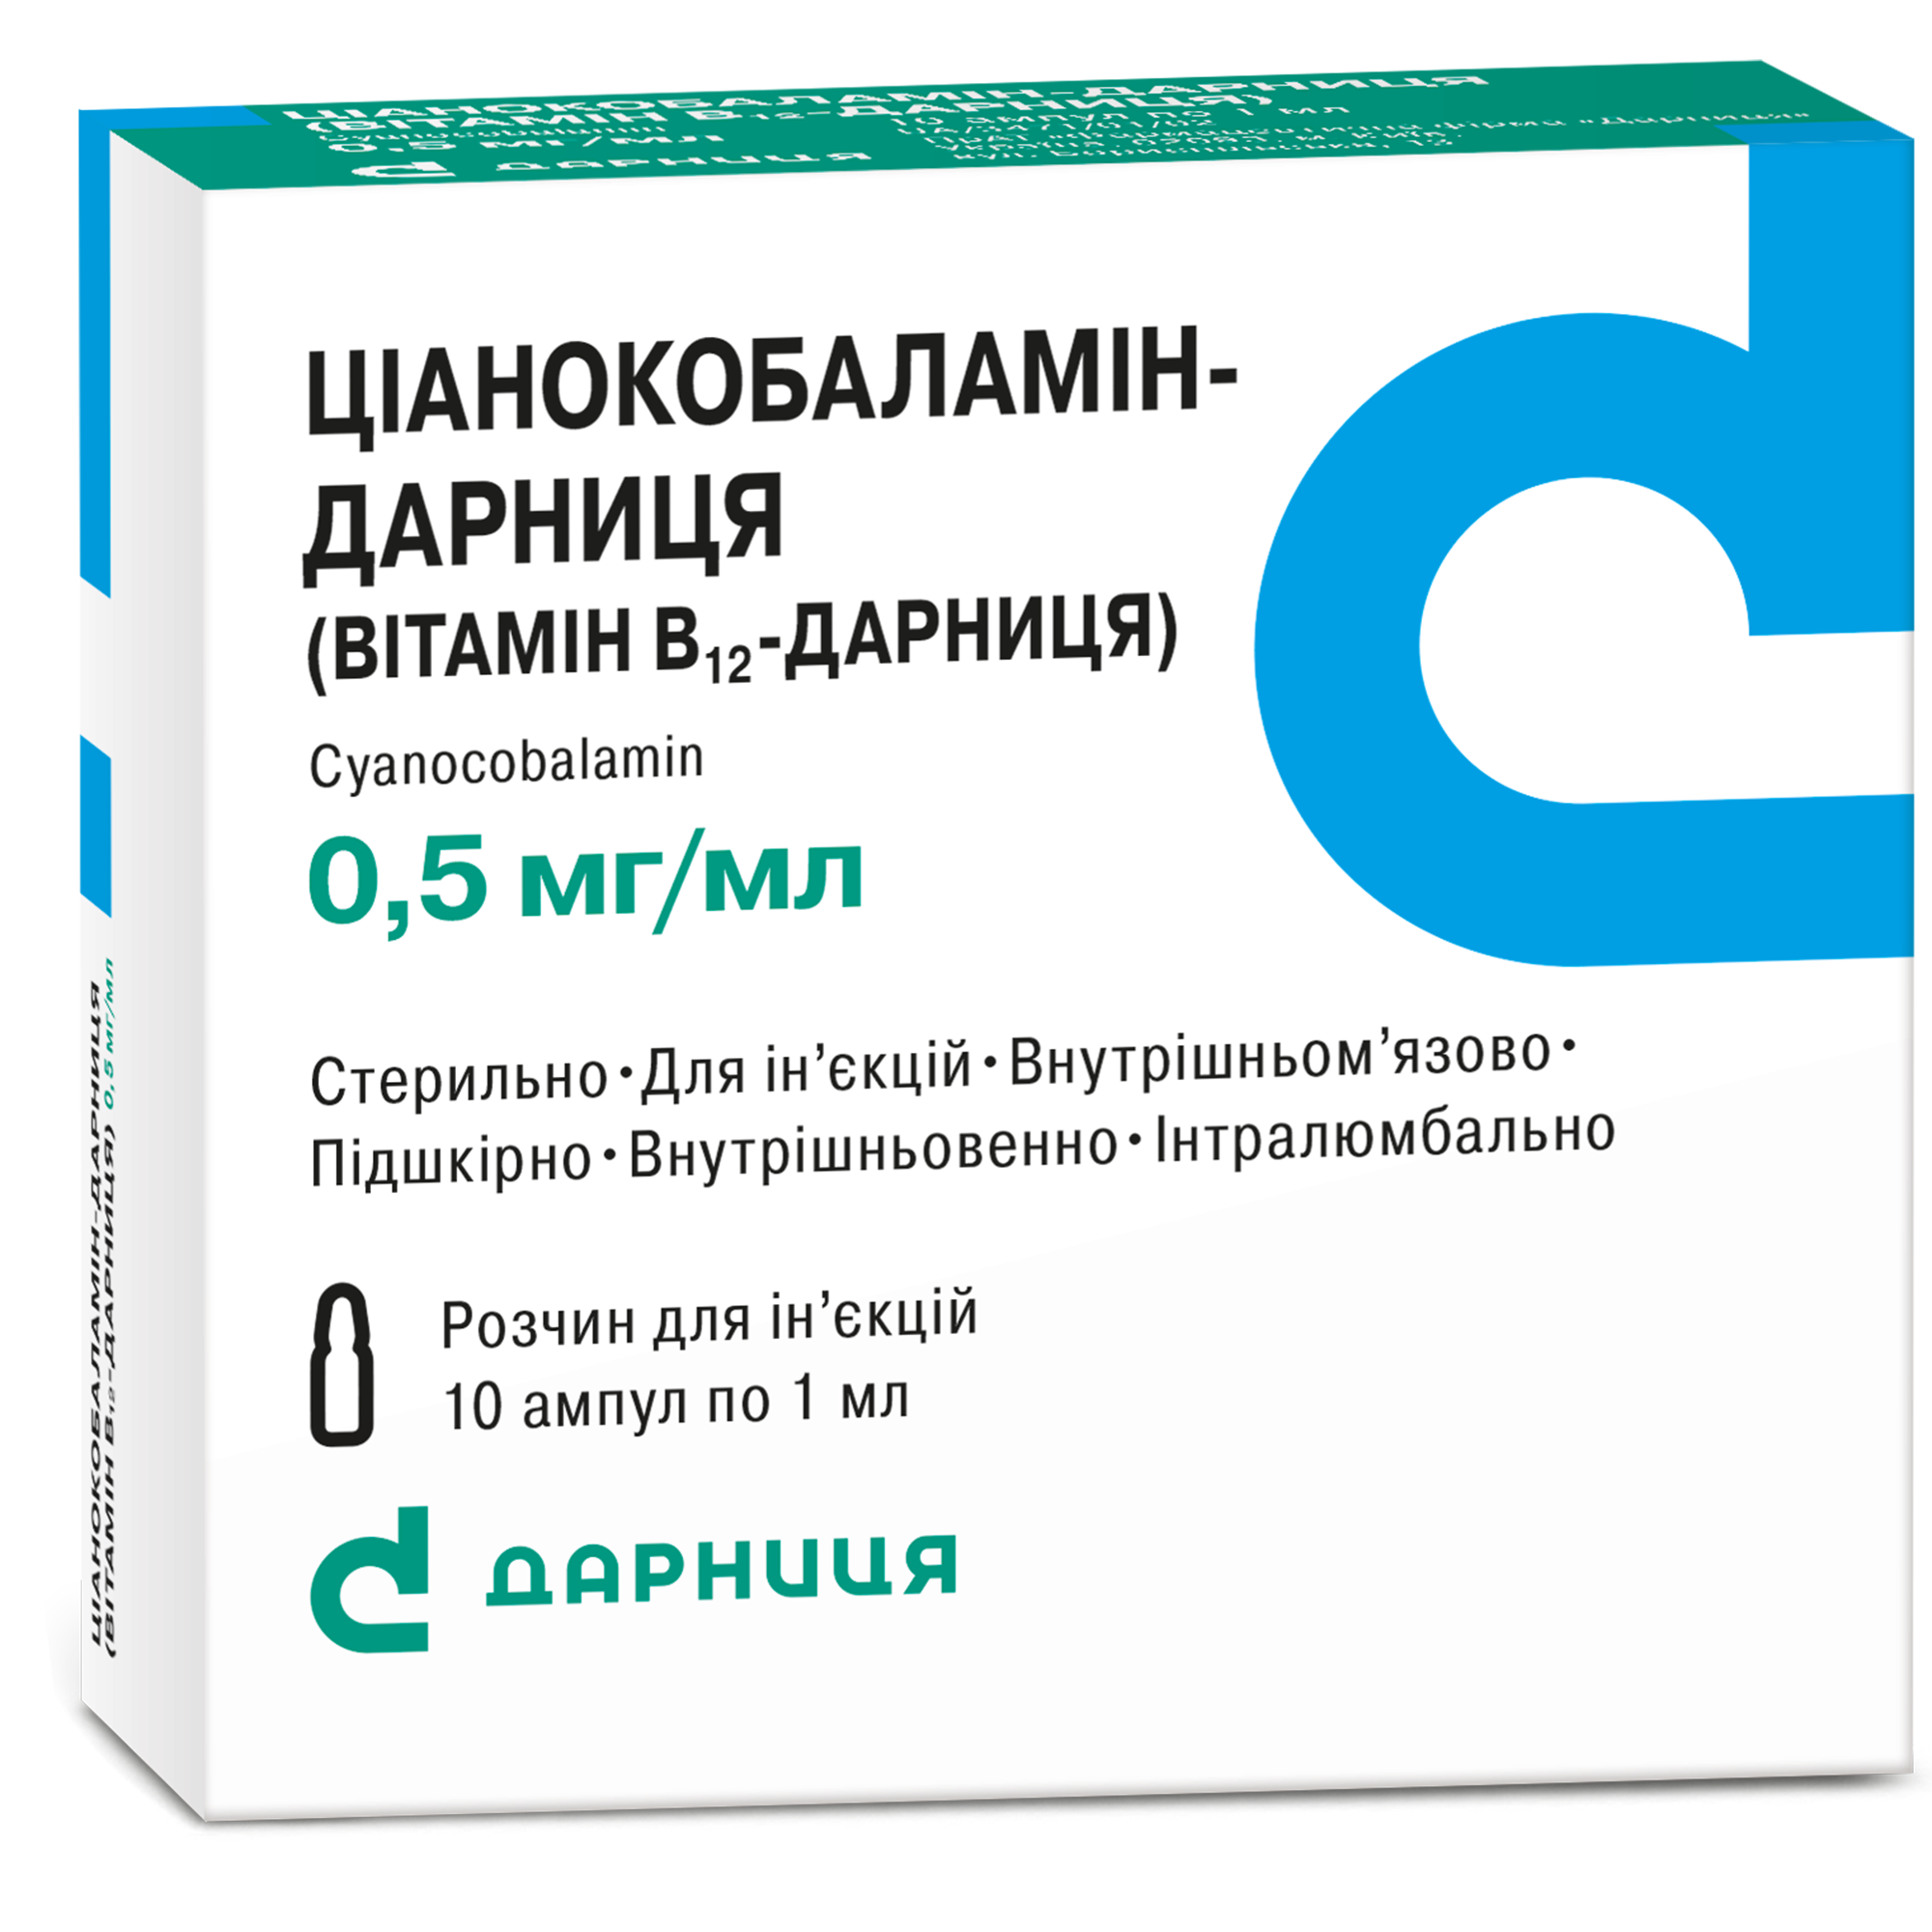 Ціанокобаламін - Дарниця (Вітамін В12 - Дарниця)